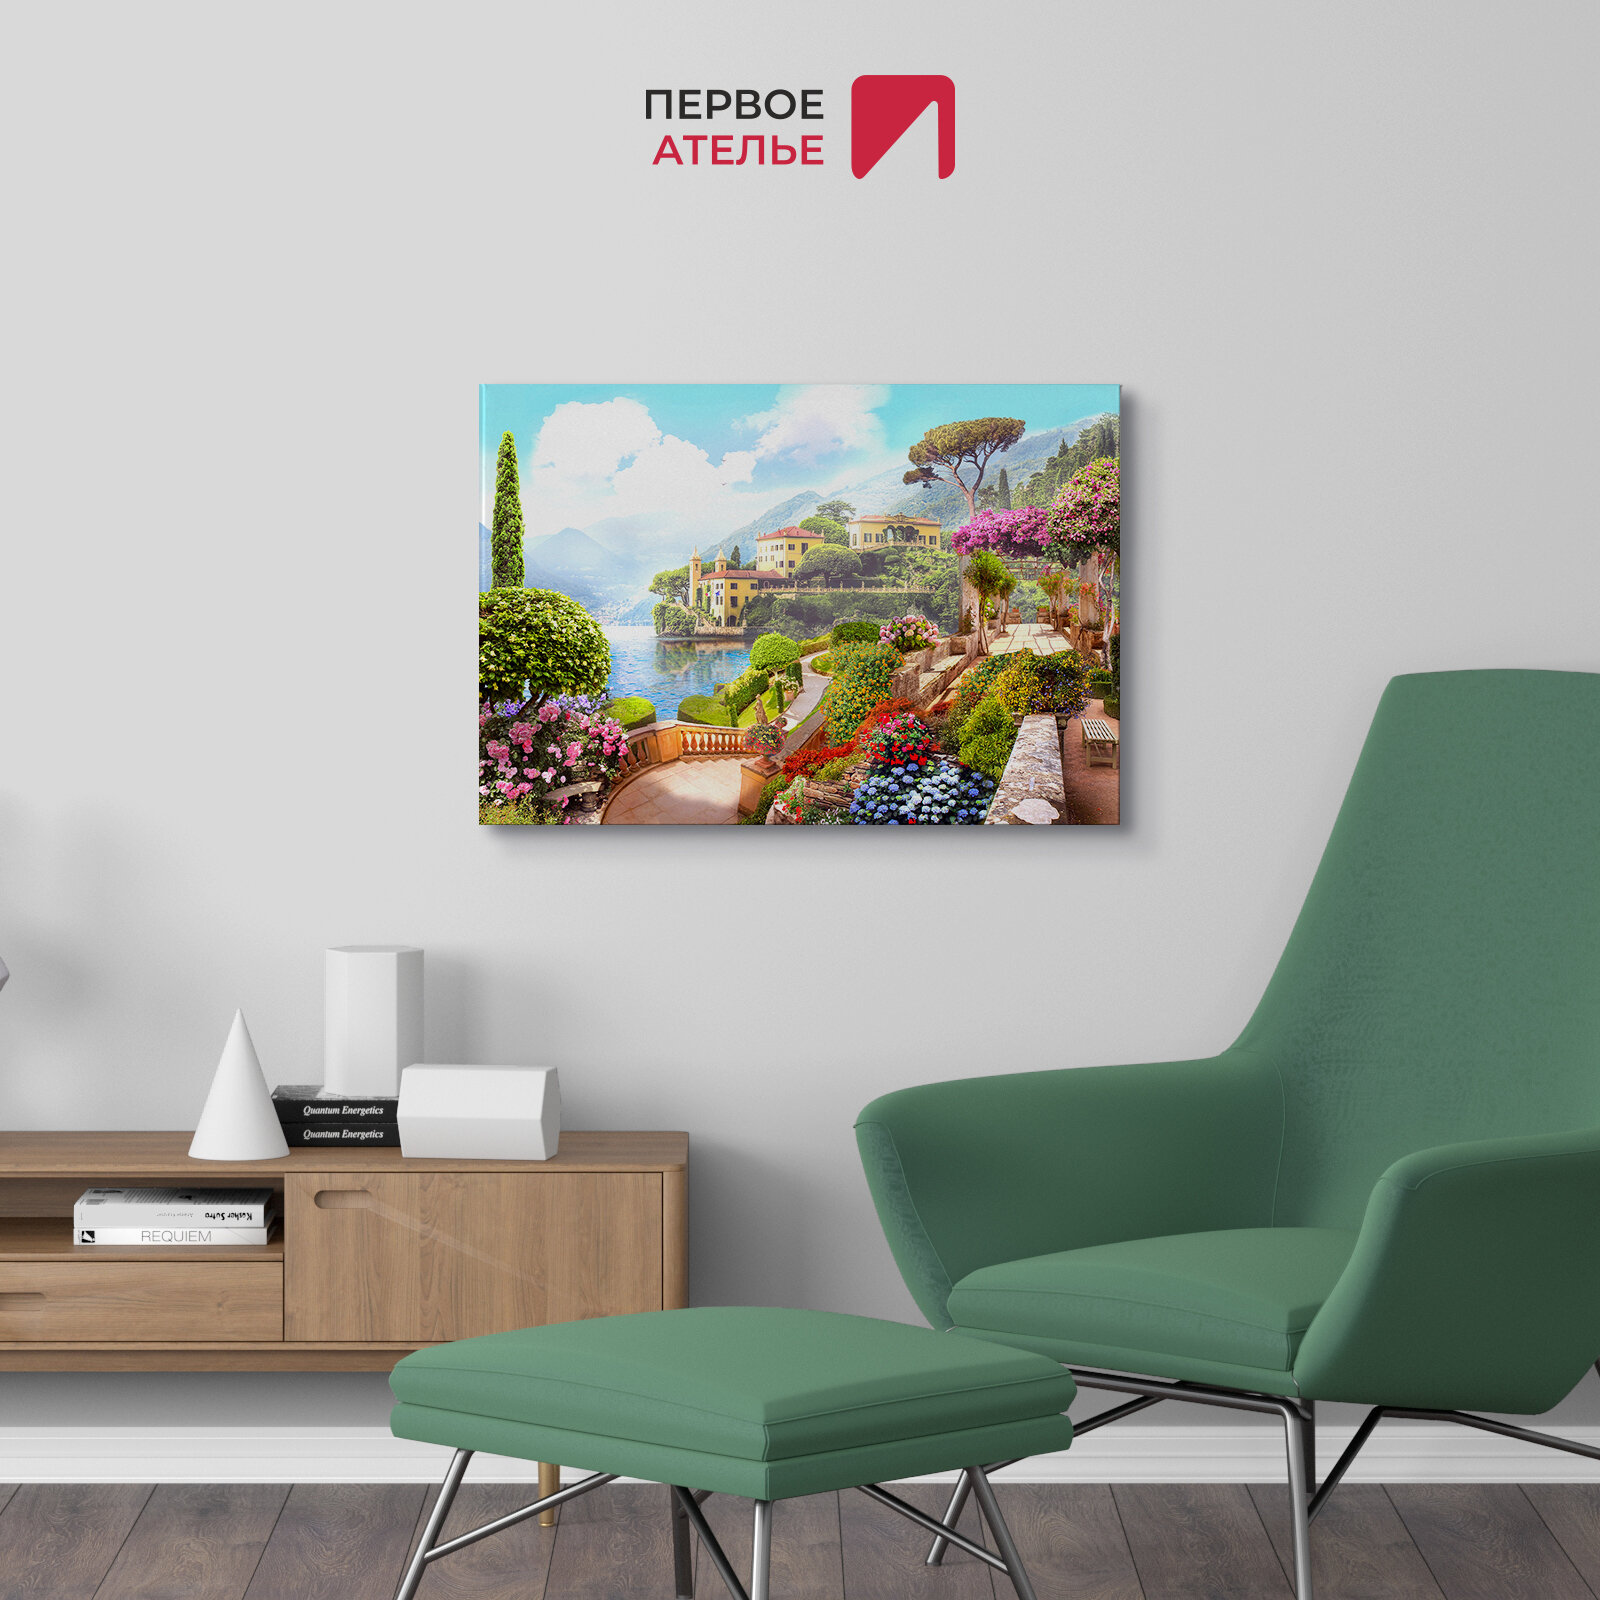 Картина на стену на холсте для интерьера первое ателье "Цветущая набережная с видом на старые дома и залив" 80х53 см (ШхВ), на деревянном подрамнике